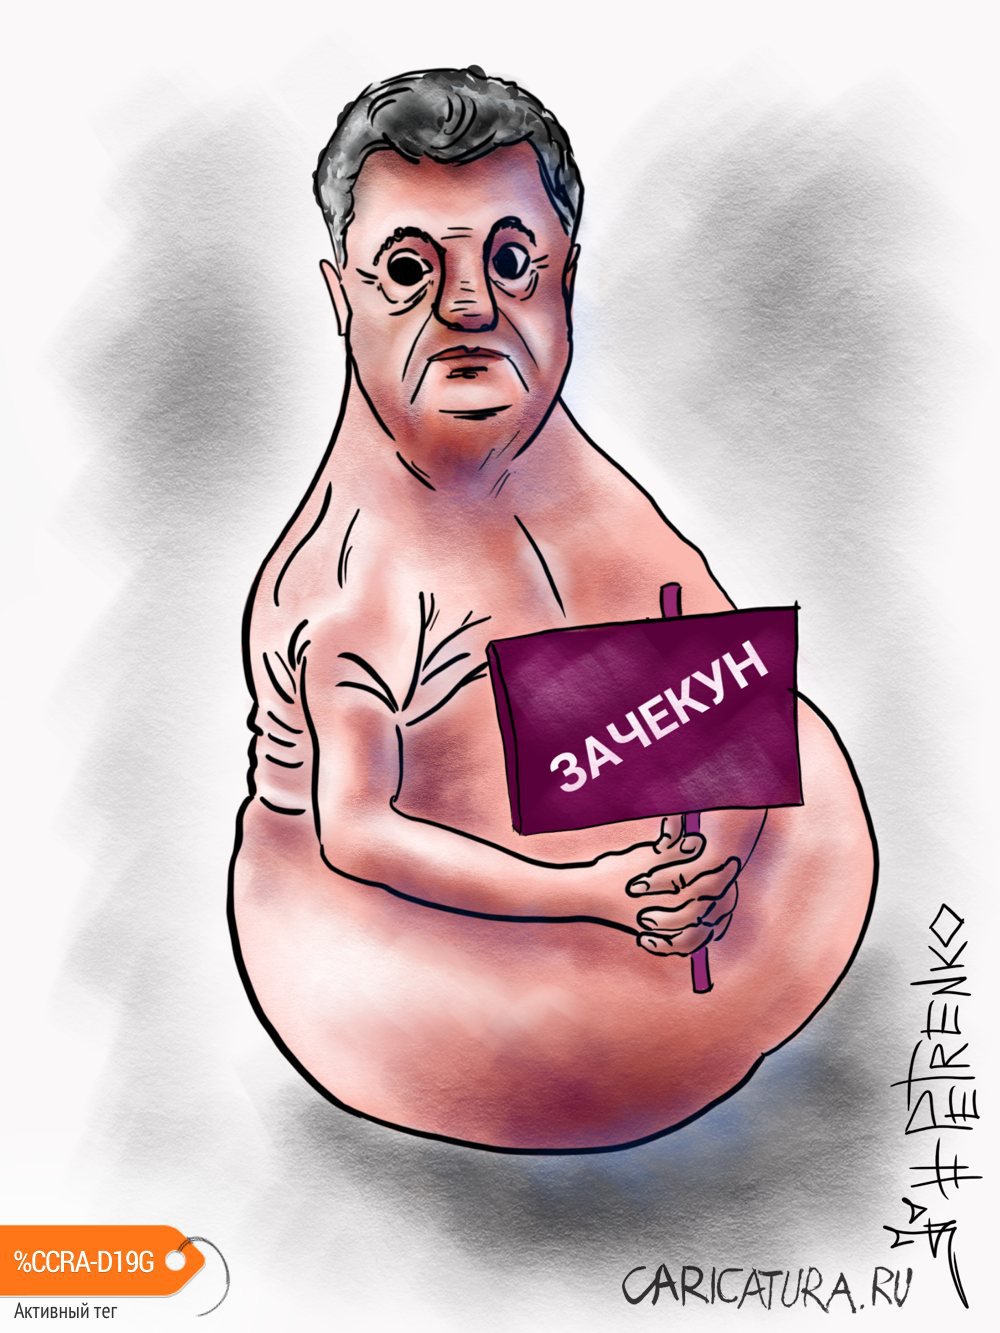 Карикатура "Ждун", Андрей Петренко